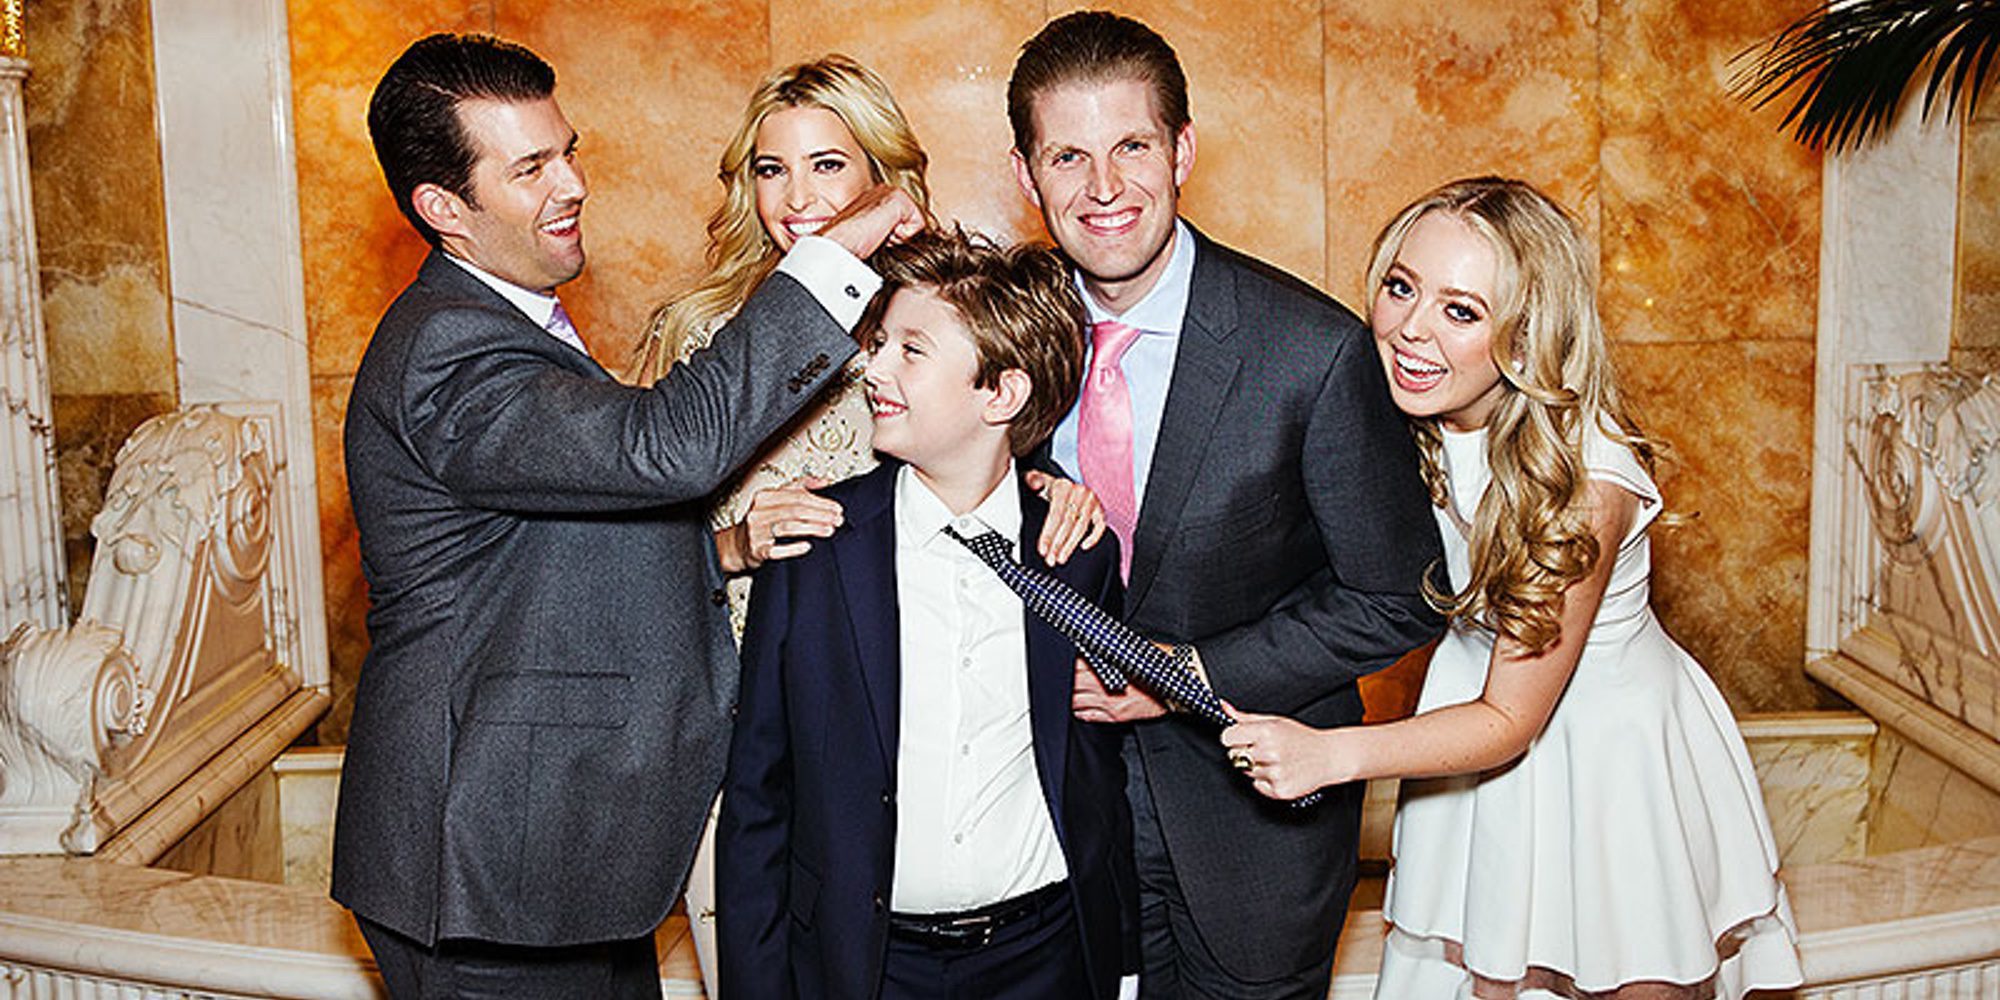 Los Trump: el clan de hermanos unidos por su padre Donald Trump, dinero, política y escándalos